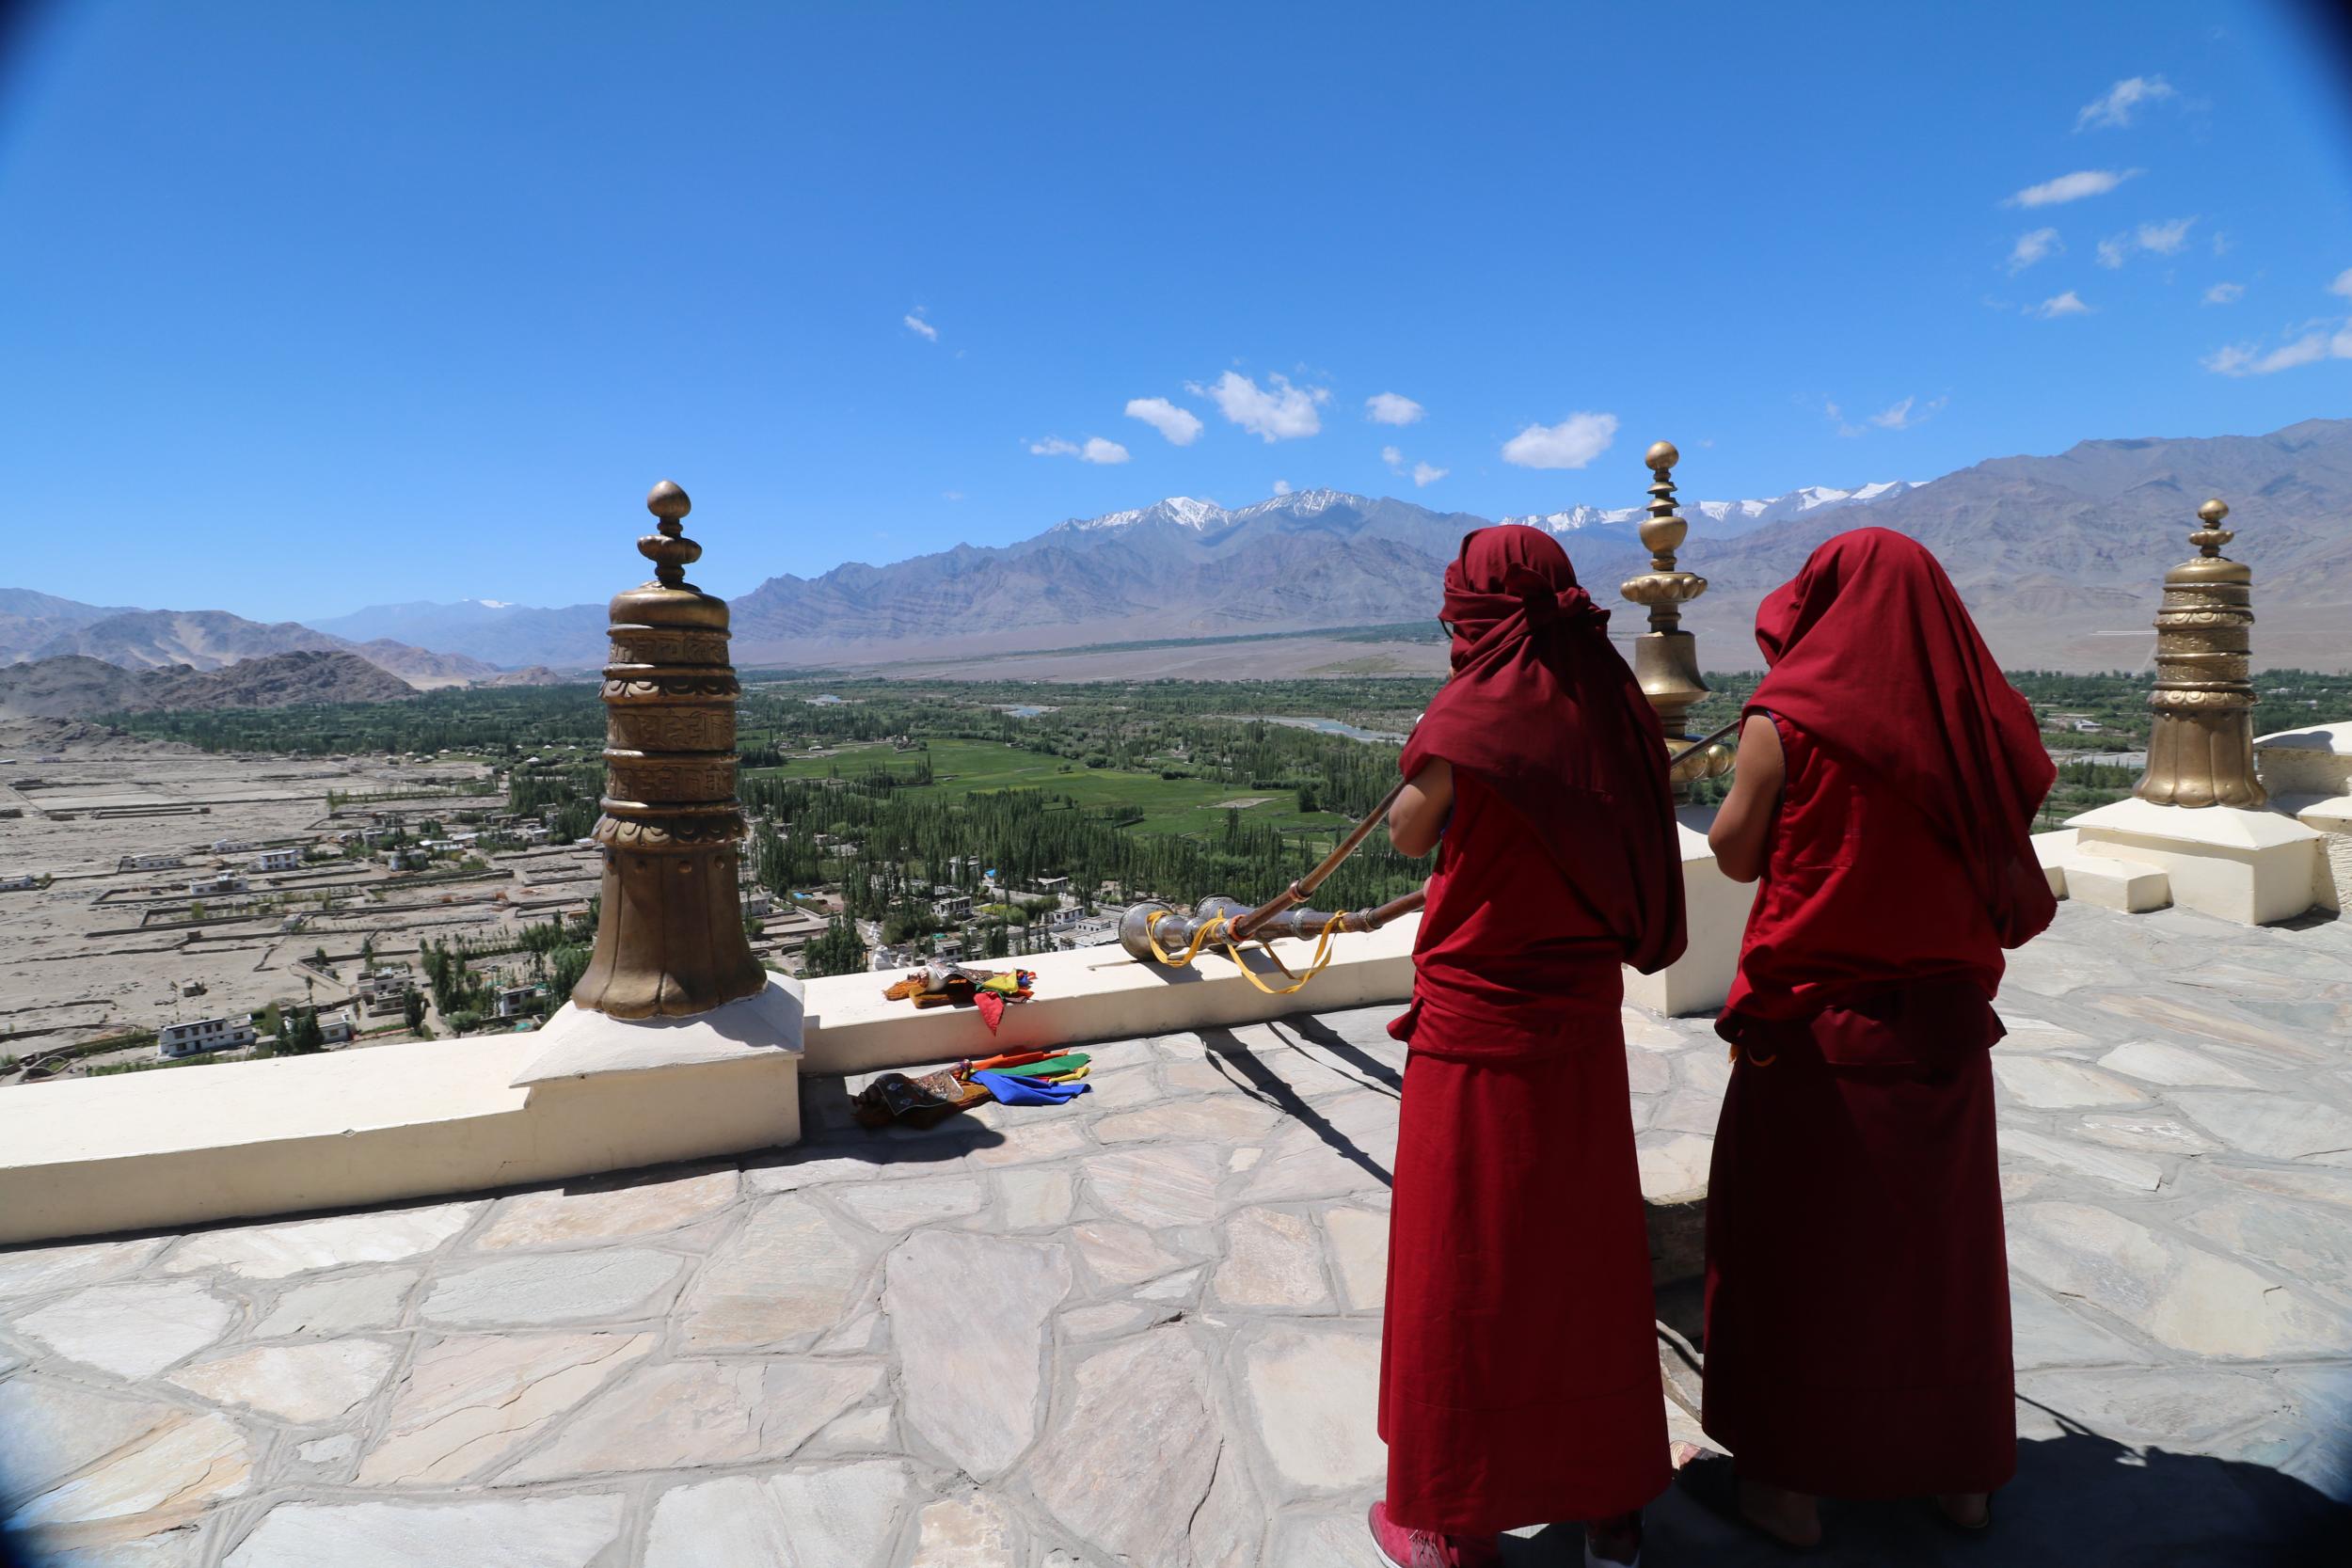 Ladakh is predominantly Buddhist